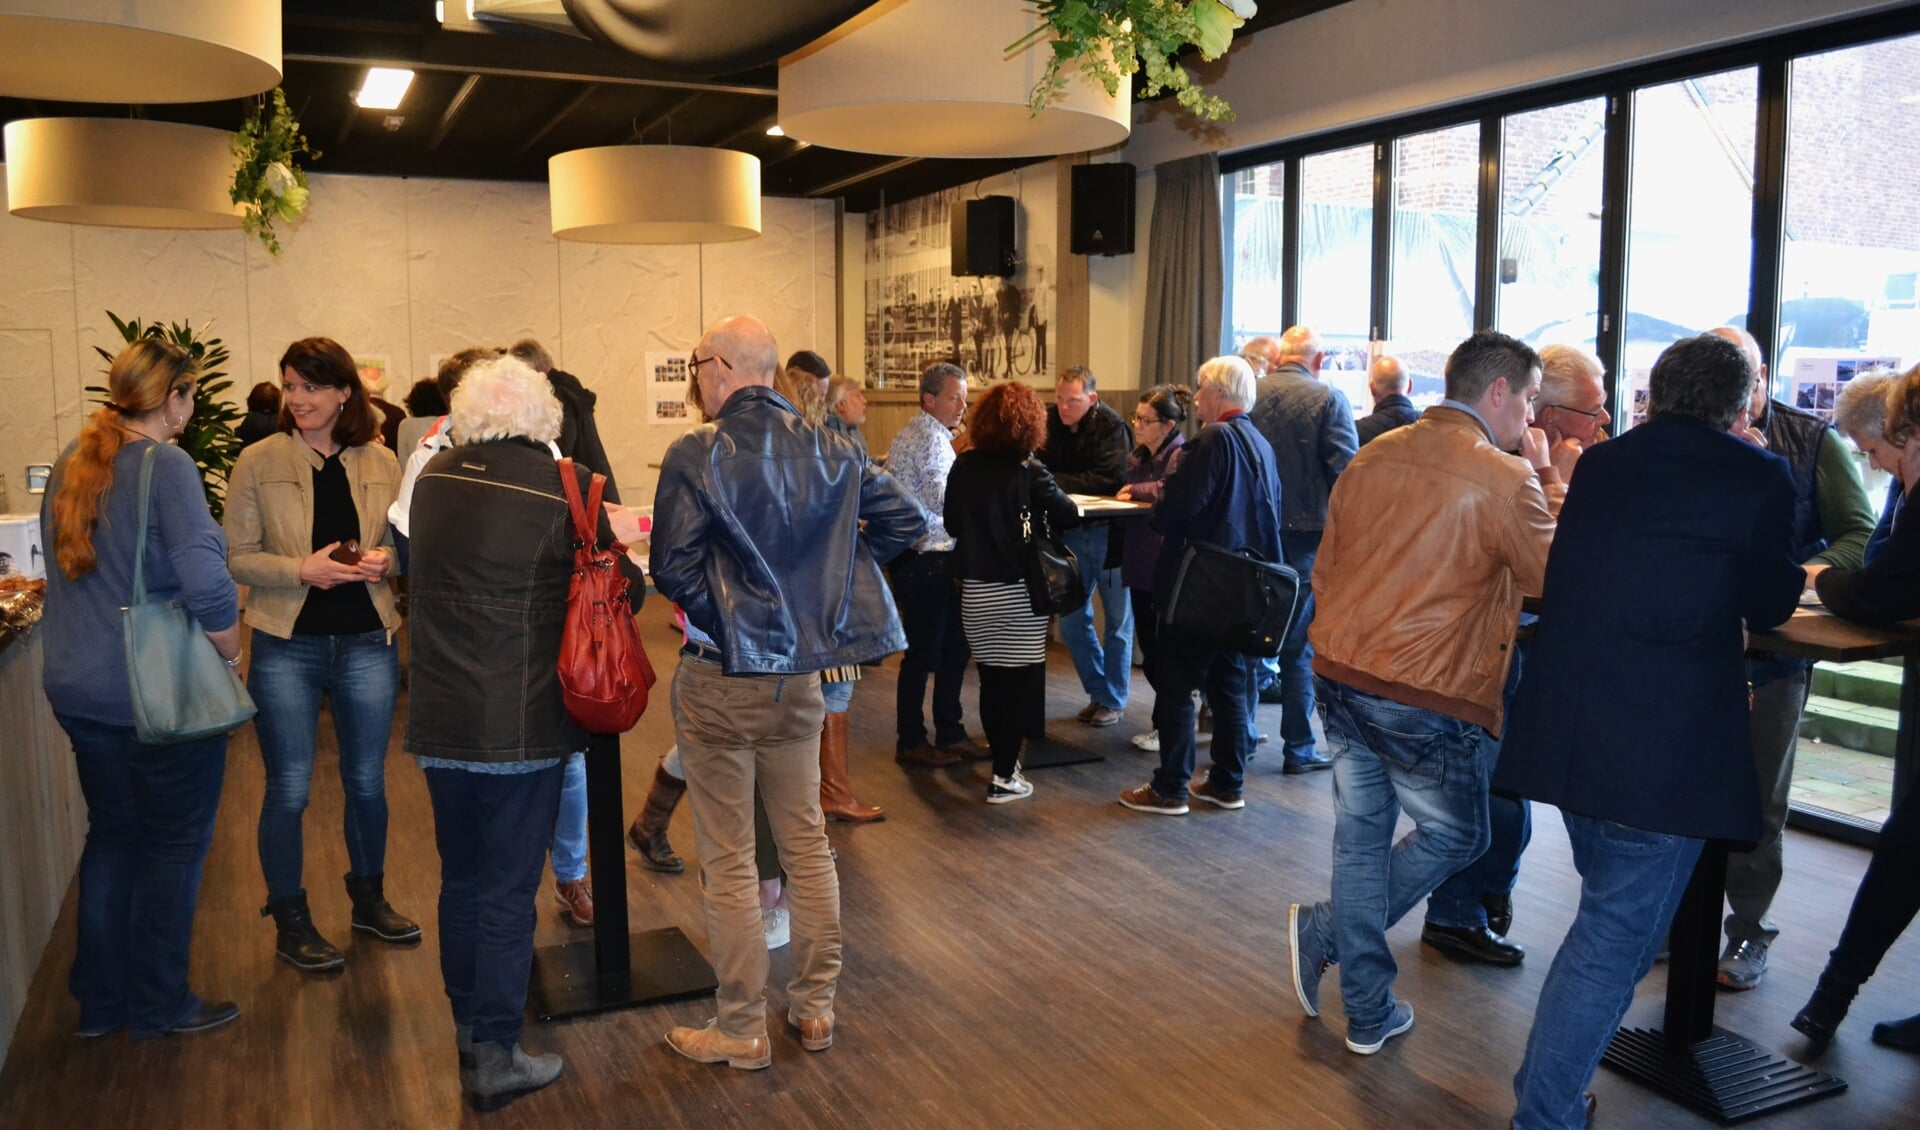 Inwoners kregen voor het eerst het schetsontwerp voor de herinrichting van de haven in Dinteloord gepresenteerd FOTO TINEKE FESKENS